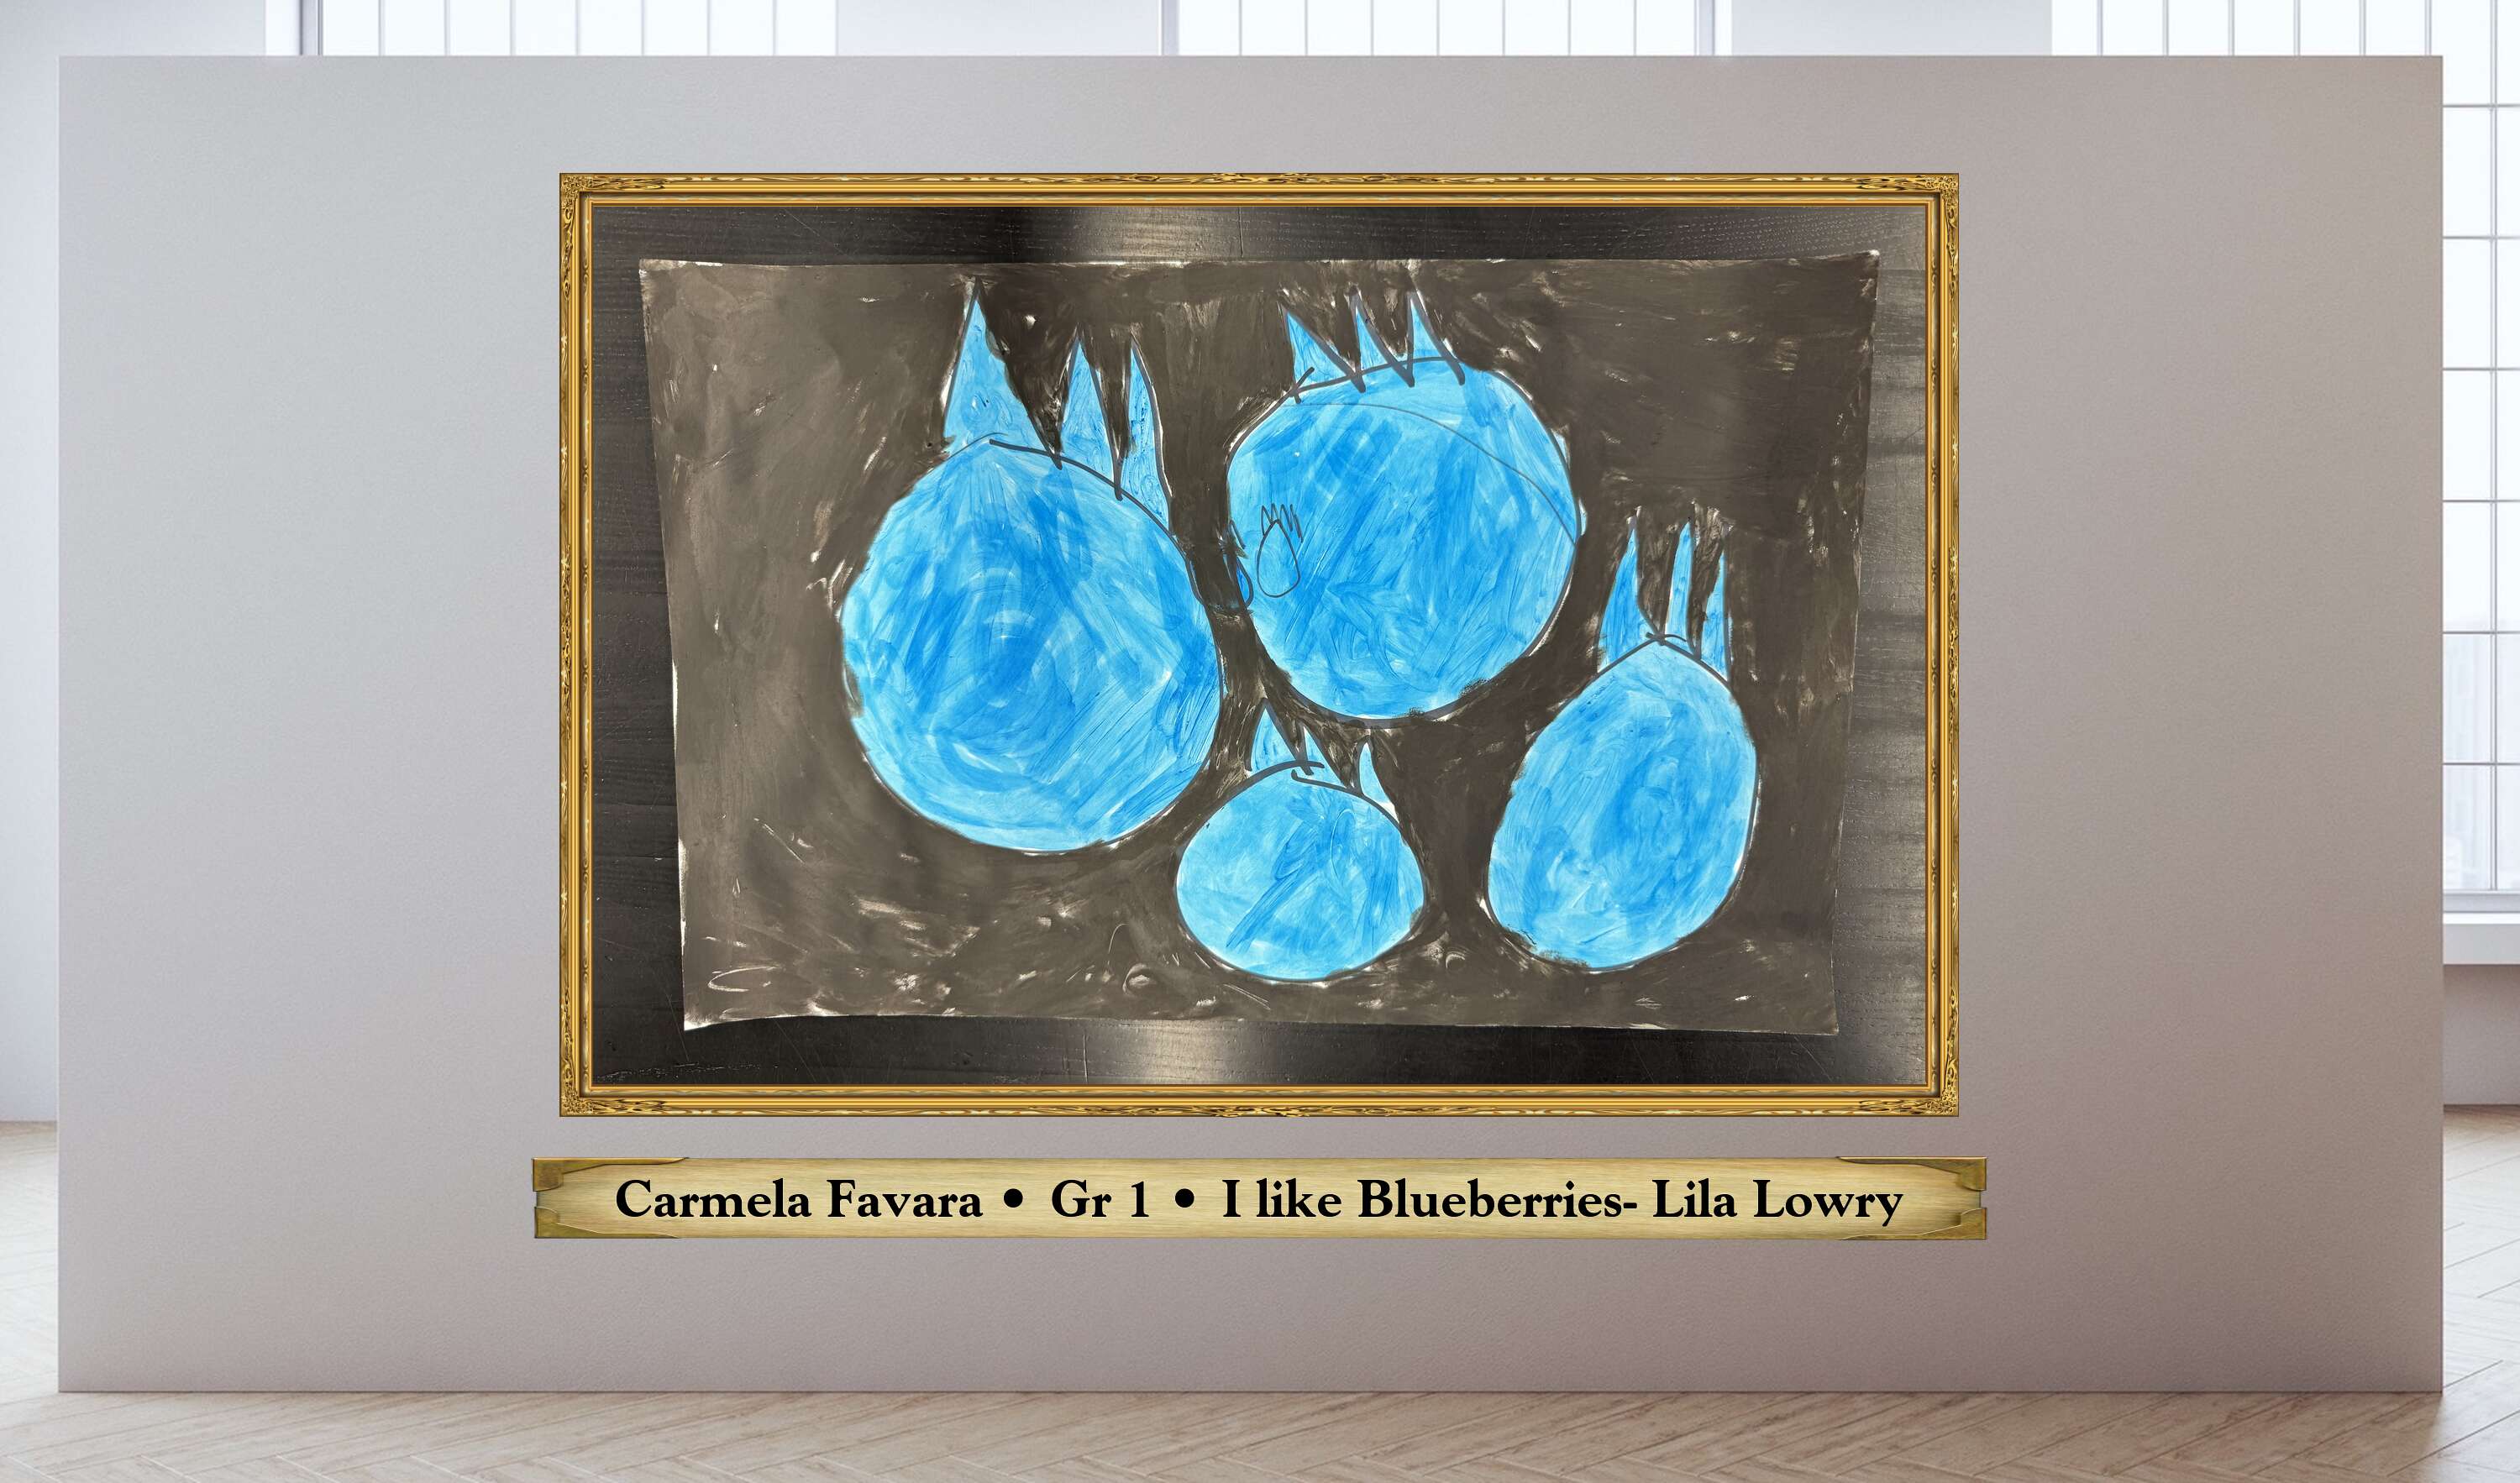 Carmela Favara • Gr 1 • I like Blueberries- Lila Lowry